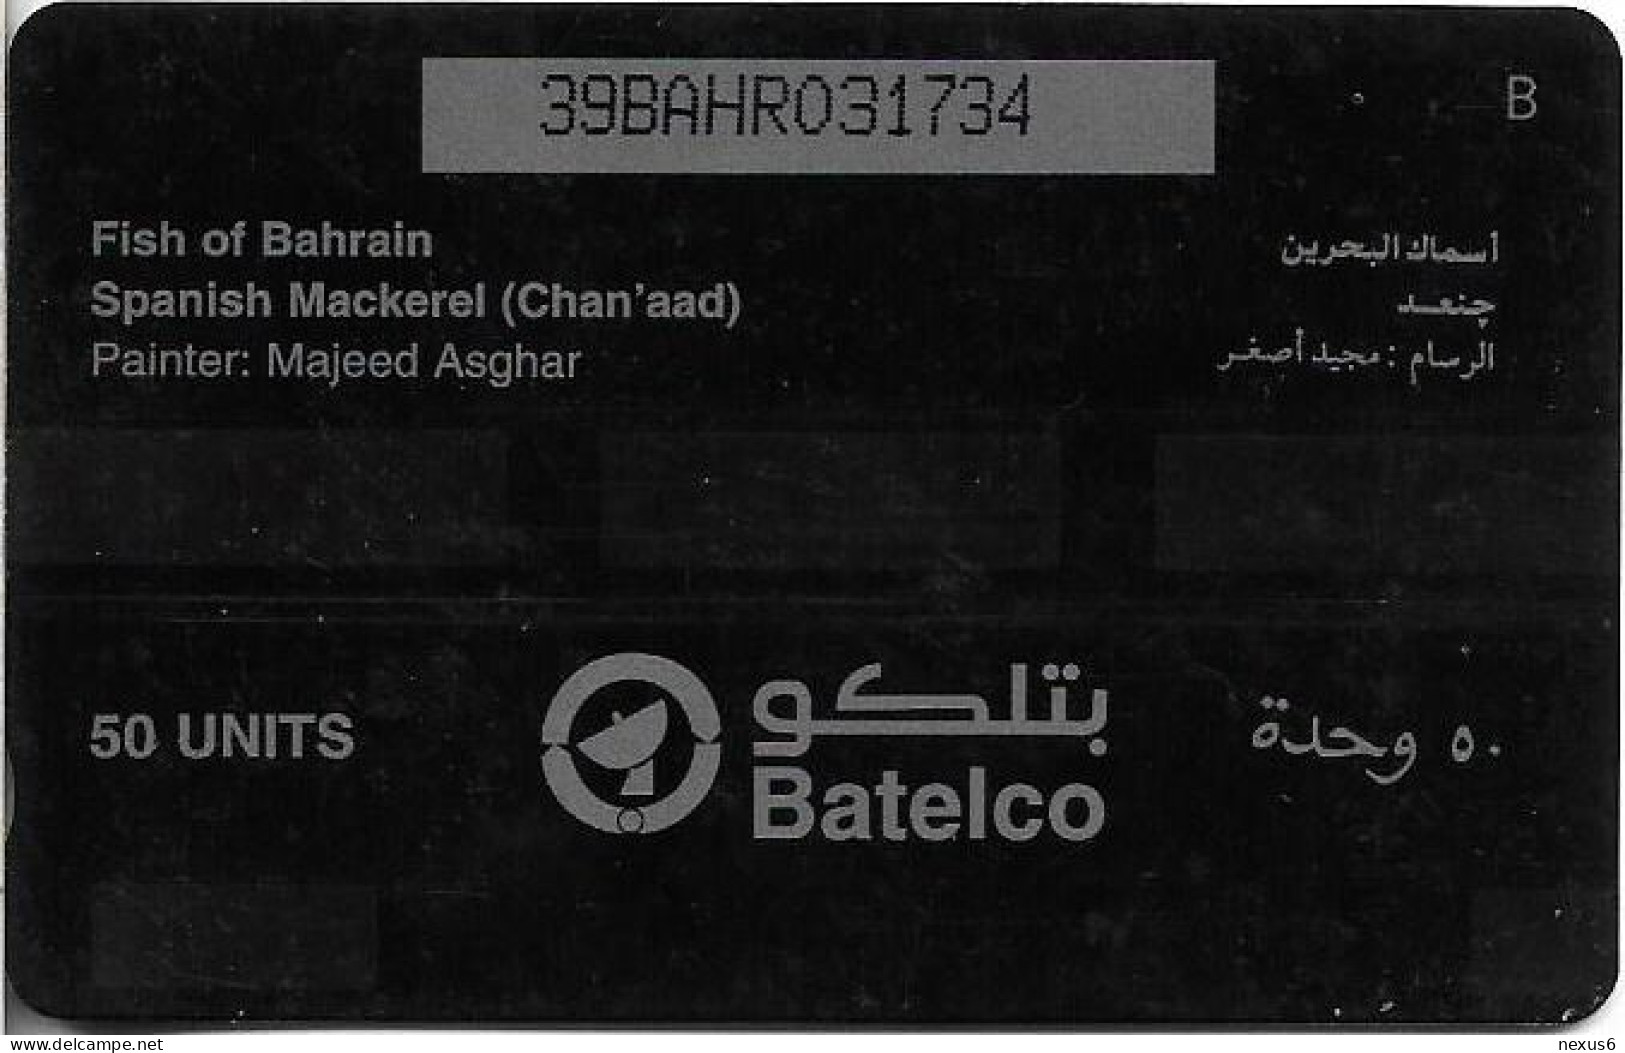 Bahrain - Batelco (GPT) - Fish Of Bahrain - Spanish Mackerel - 39BAHR (Normal 0, Small Cn.), 1996, 50Units, Used - Bahrain